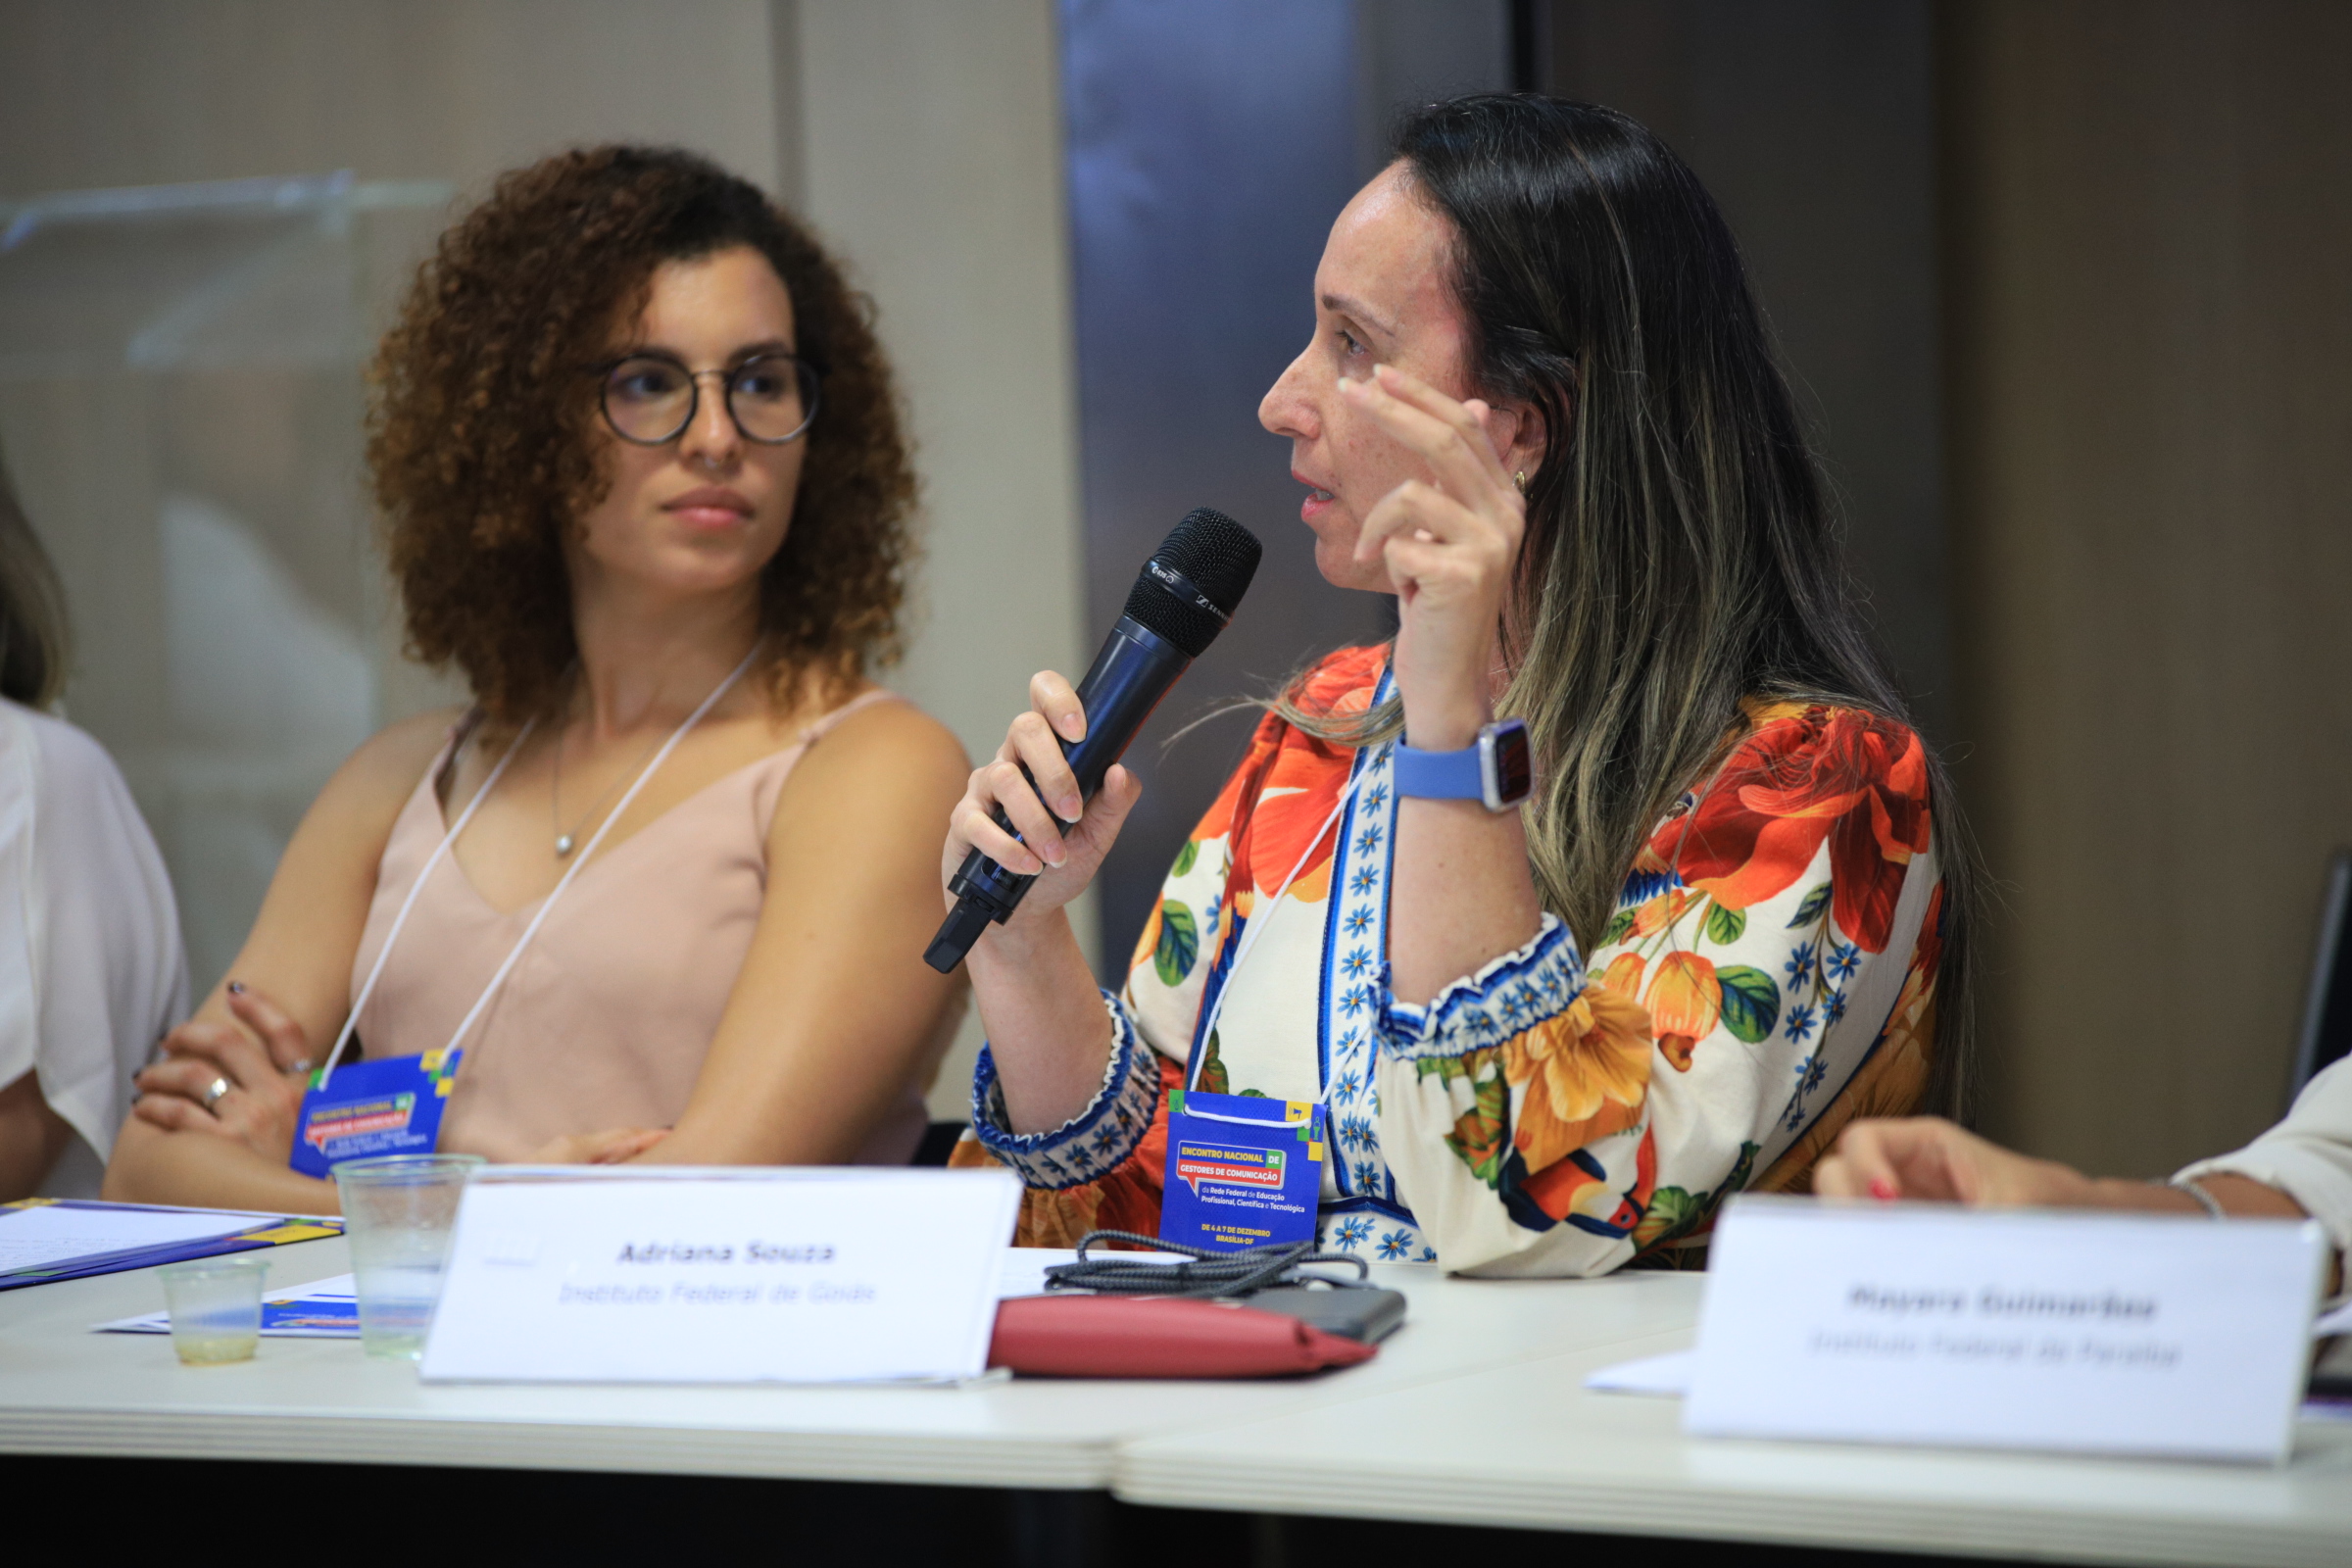 Diretora de Comunicação Social do IFG, Adriana Souza Campos, participou do encontro nacional e foi eleita para representar a região Centro-Oeste no Comitê de Gestores de Comunicação da Rede Federal que conta com o apoio da Setec